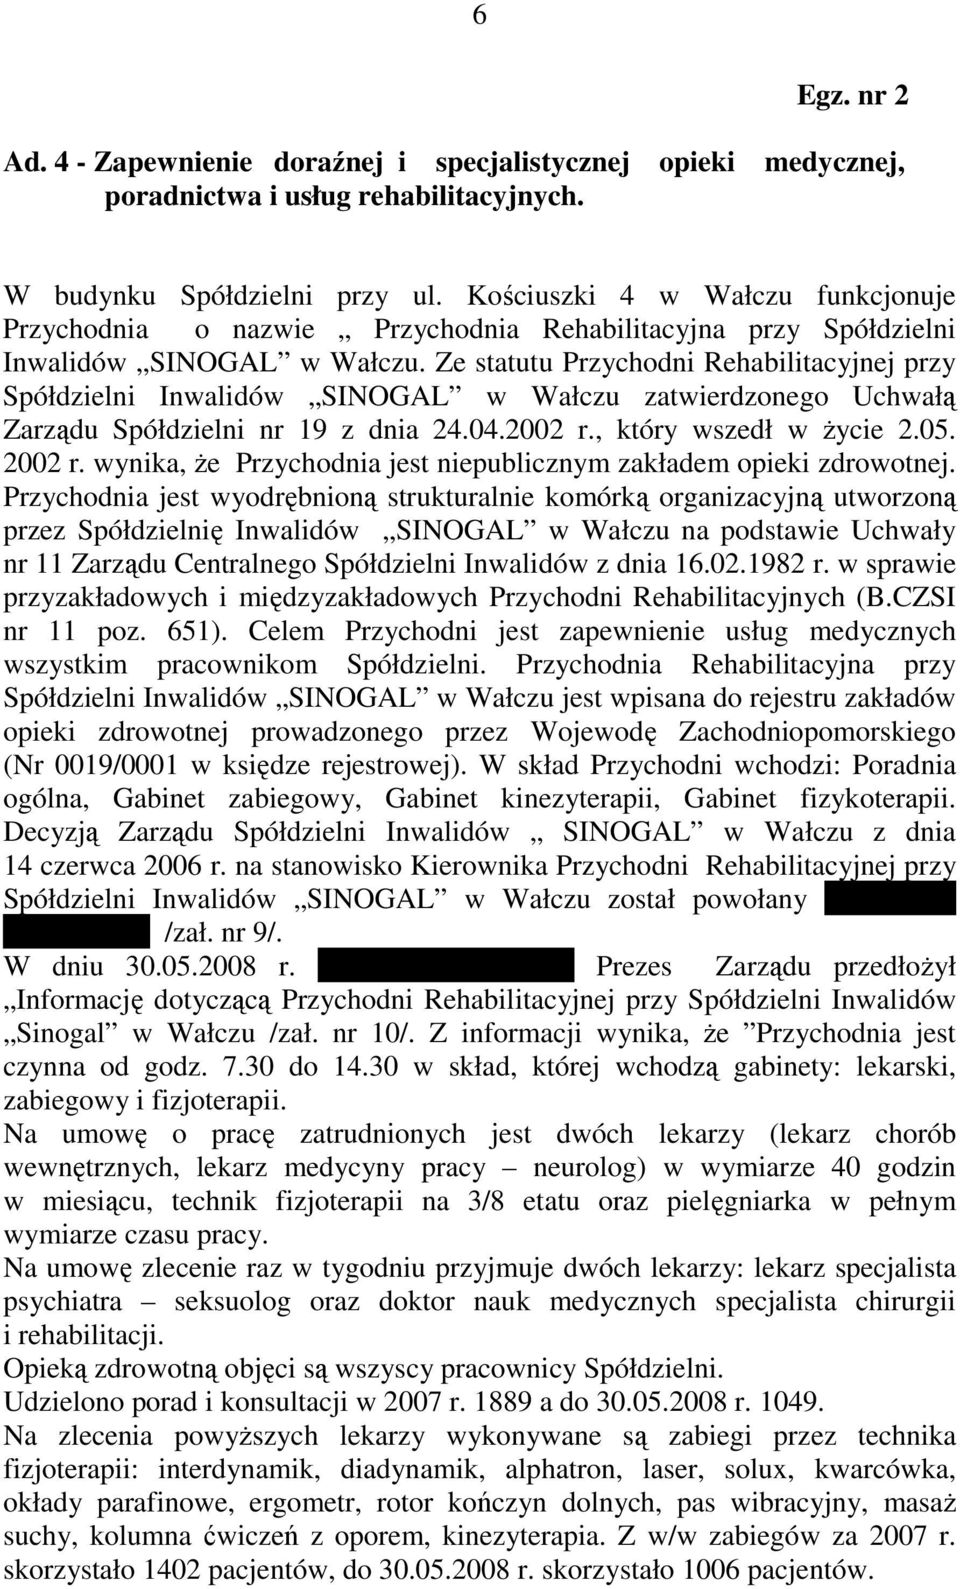 Ze statutu Przychodni Rehabilitacyjnej przy Spółdzielni Inwalidów SINOGAL w Wałczu zatwierdzonego Uchwałą Zarządu Spółdzielni nr 19 z dnia 24.04.2002 r., który wszedł w Ŝycie 2.05. 2002 r.